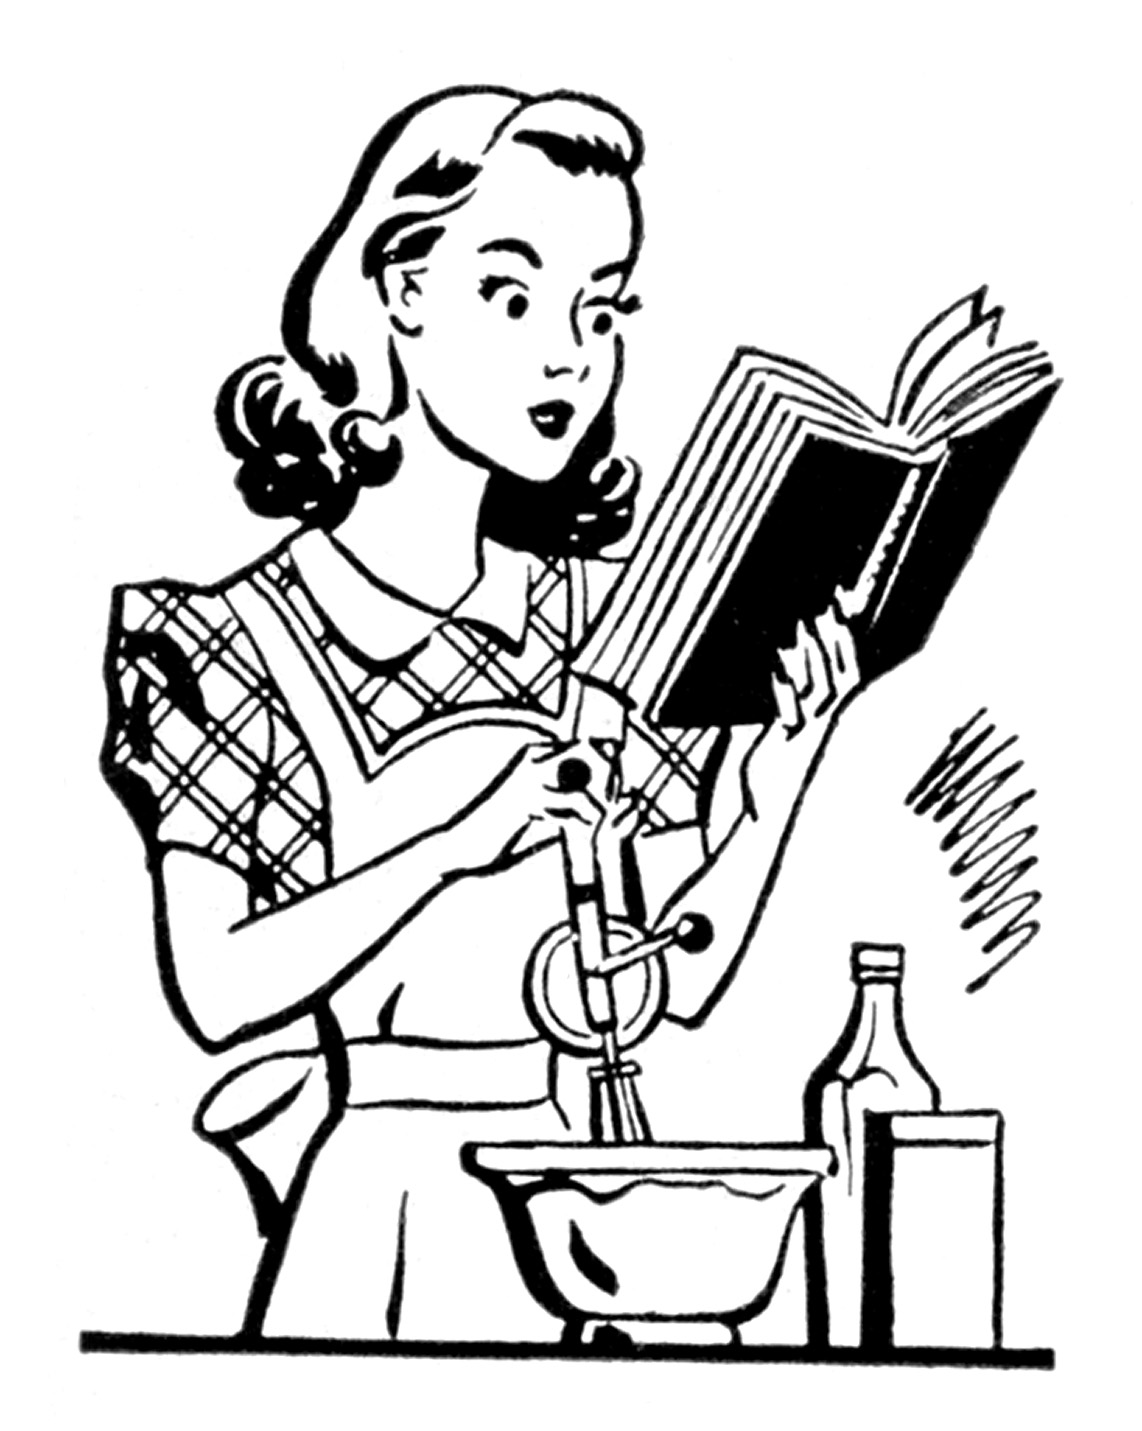 What's For Dinner, Dear? on Pinterest | 1960s, Cook Books ...